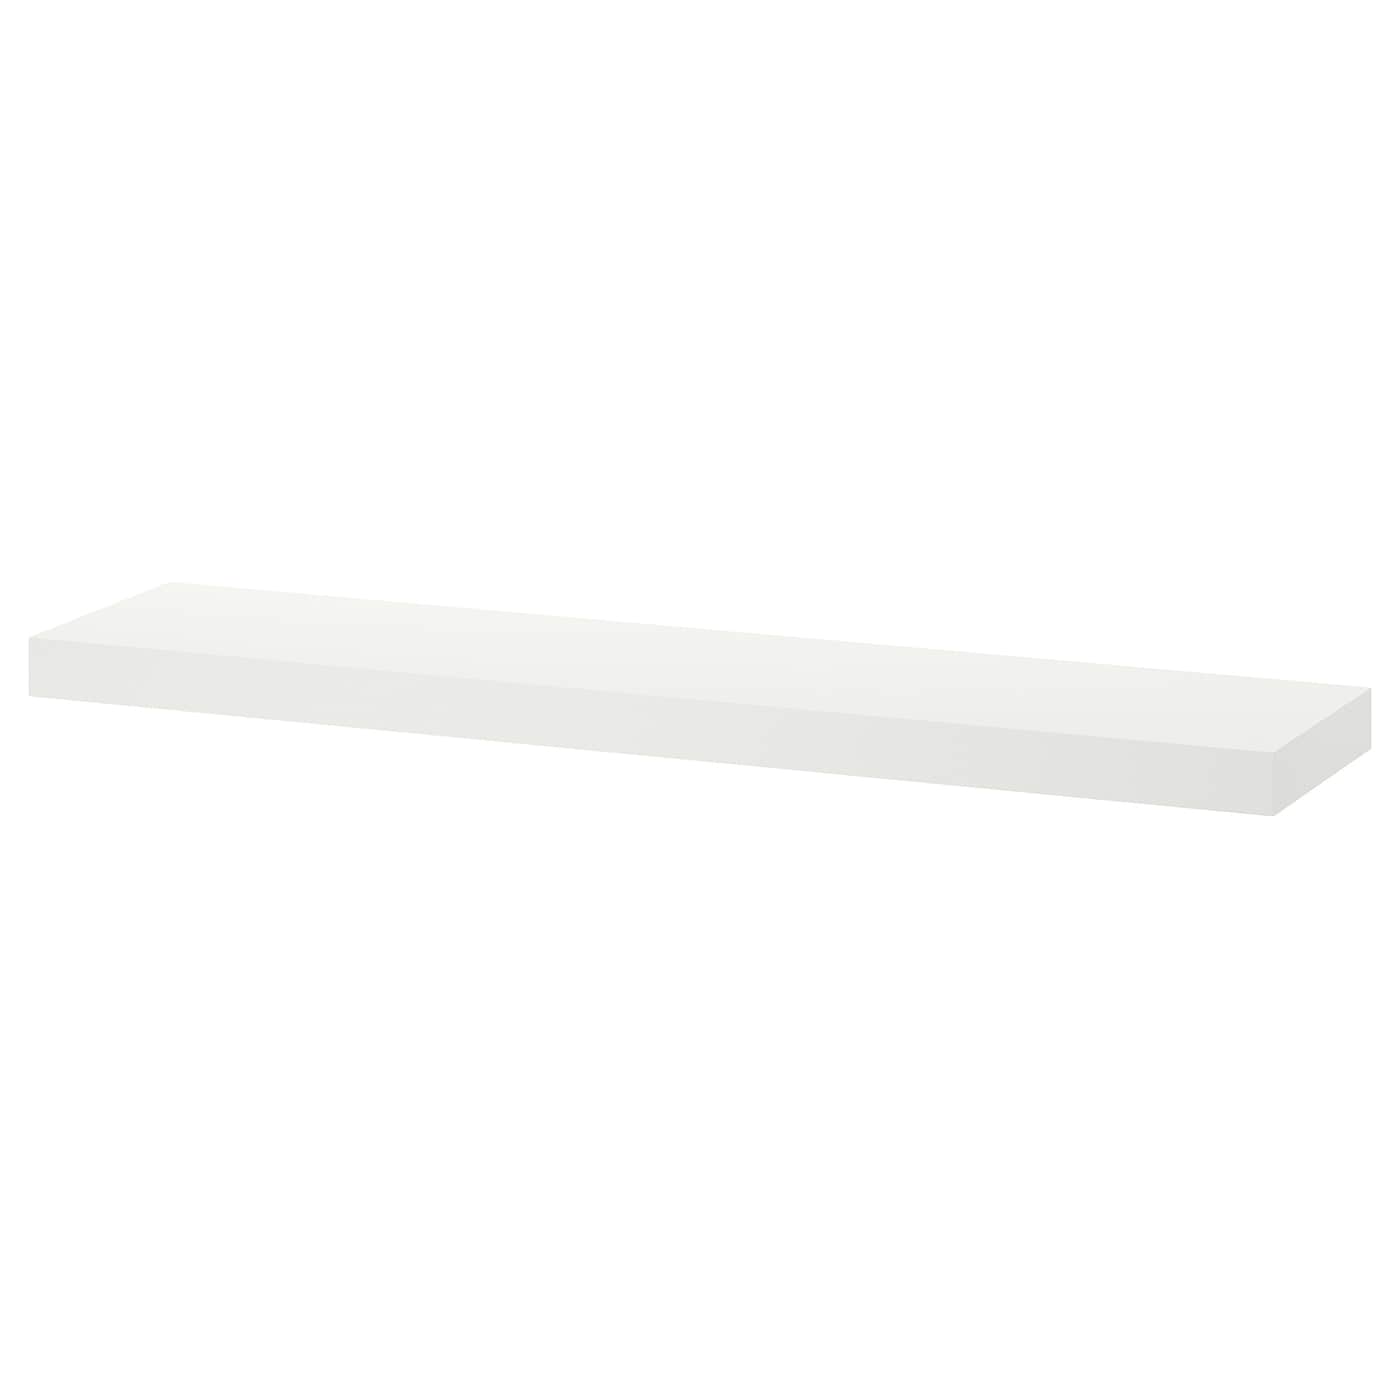 Полка настенная без ножки - IKEA LACK/ ЛАКК ИКЕА, 110x26 см, белый матовый